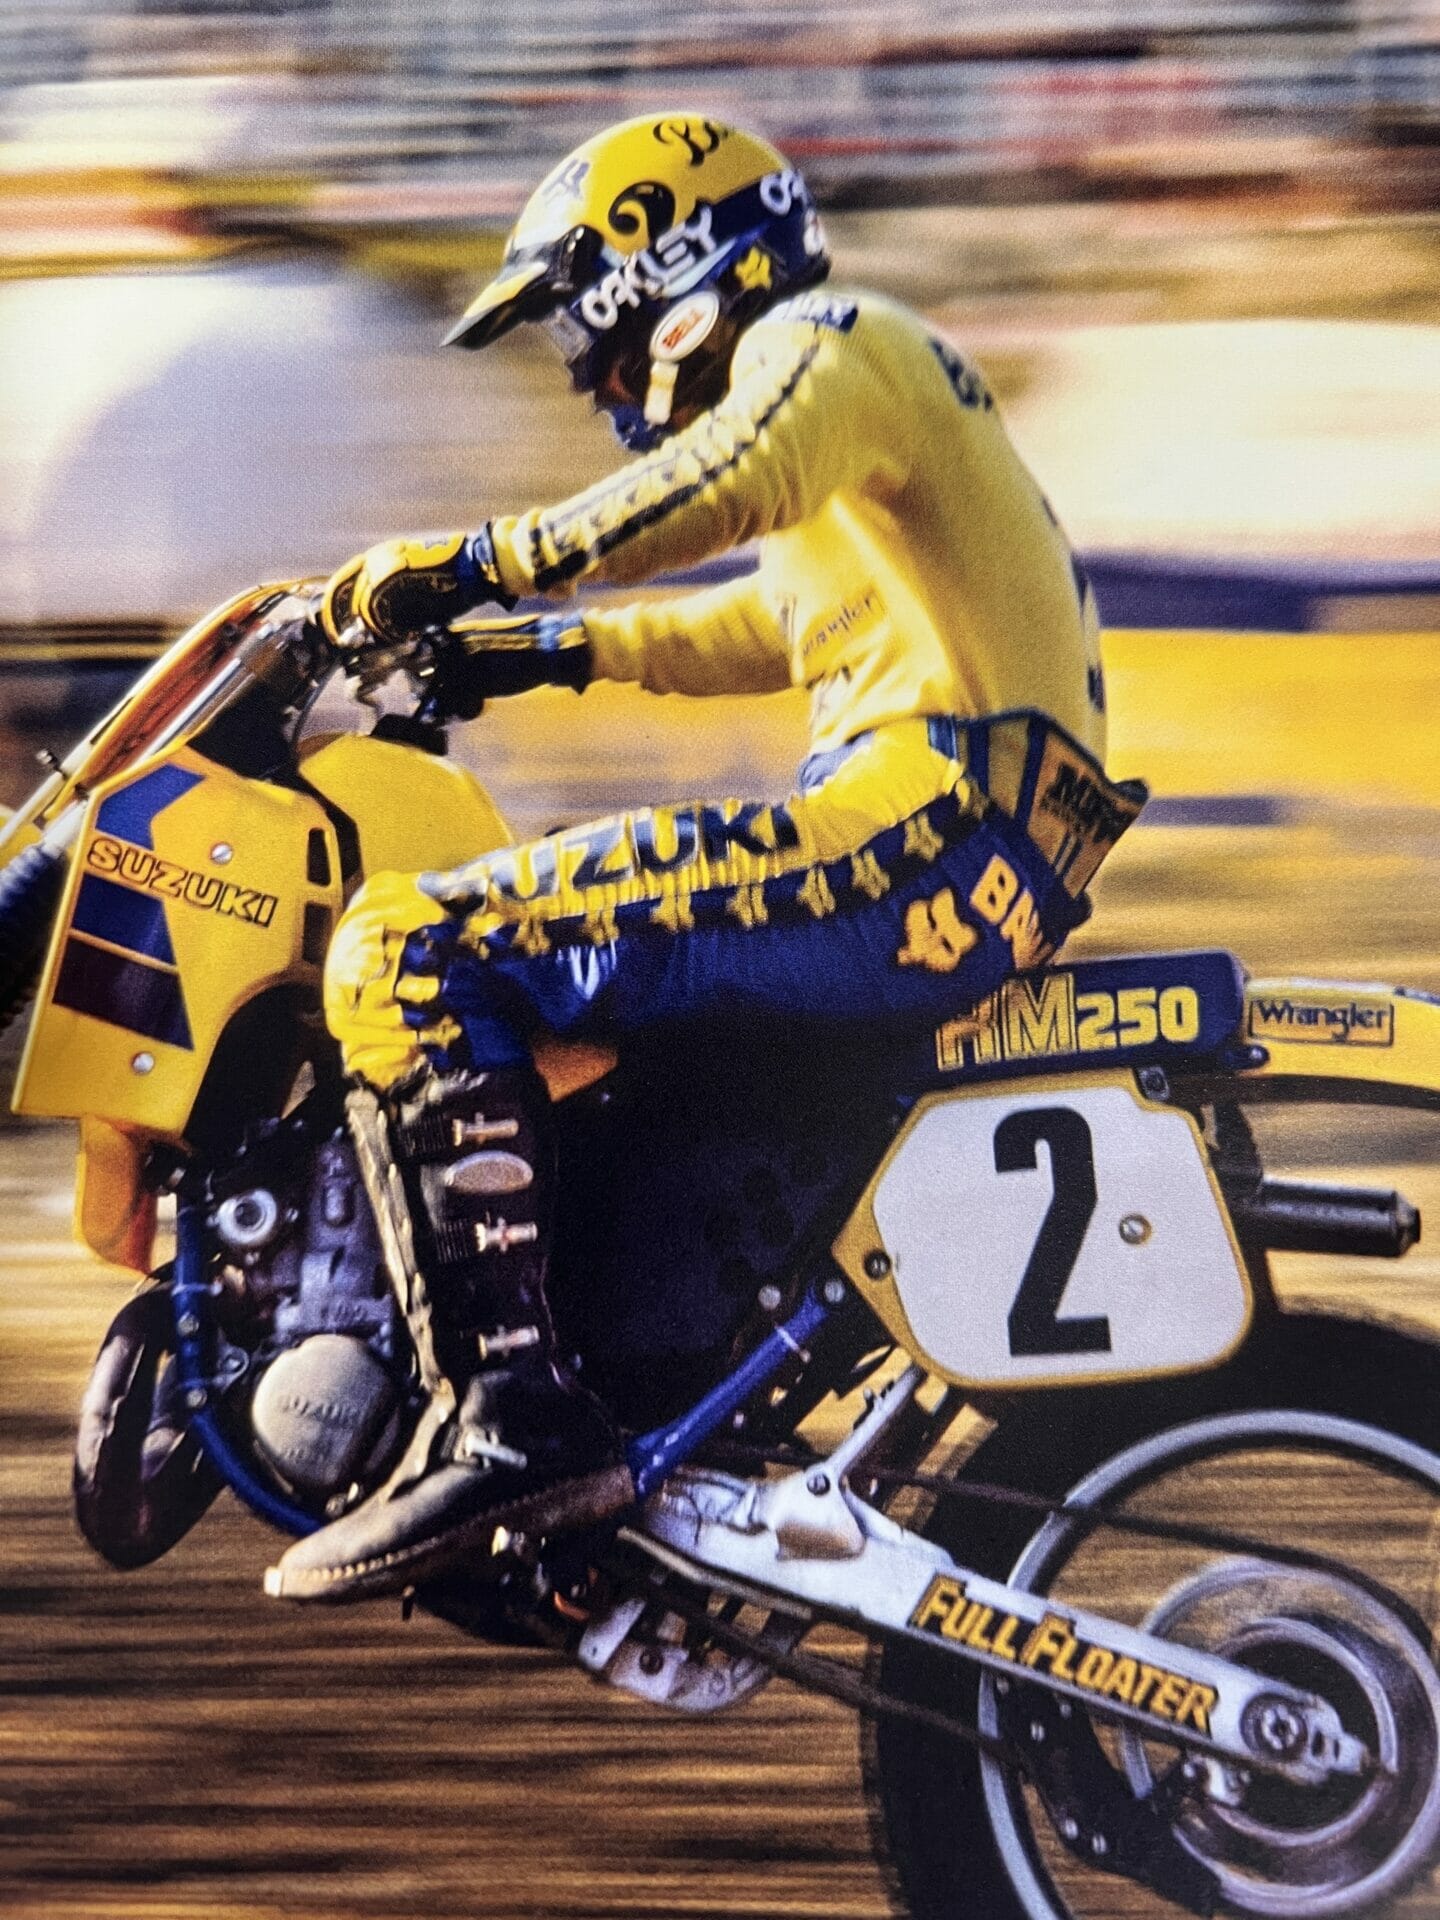 The Golden Era of Motocross, Mark Barnett